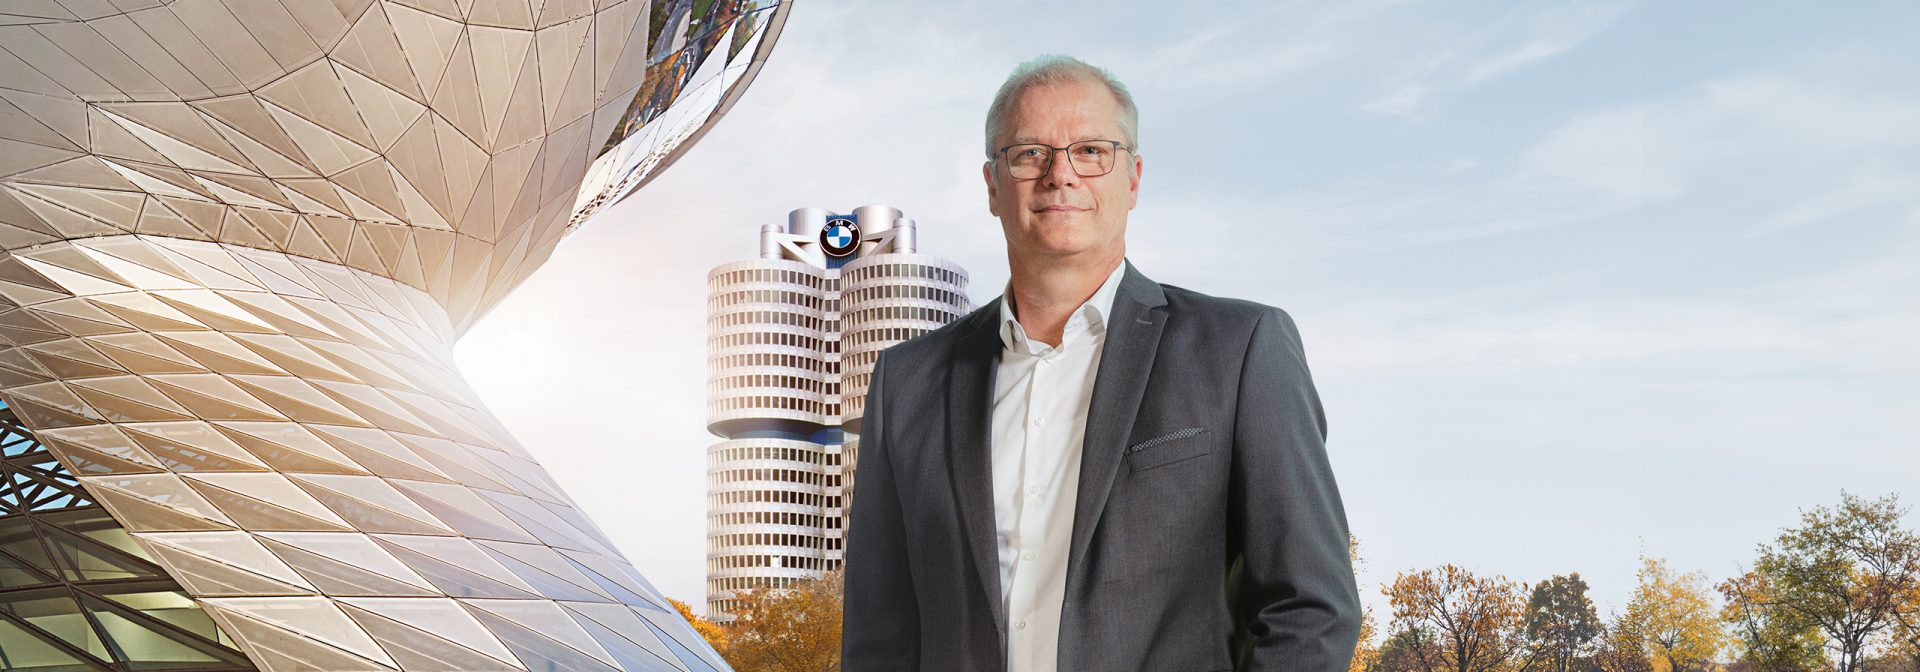 Dr. Mike Reichelt, Head of Neue Klasse BMW